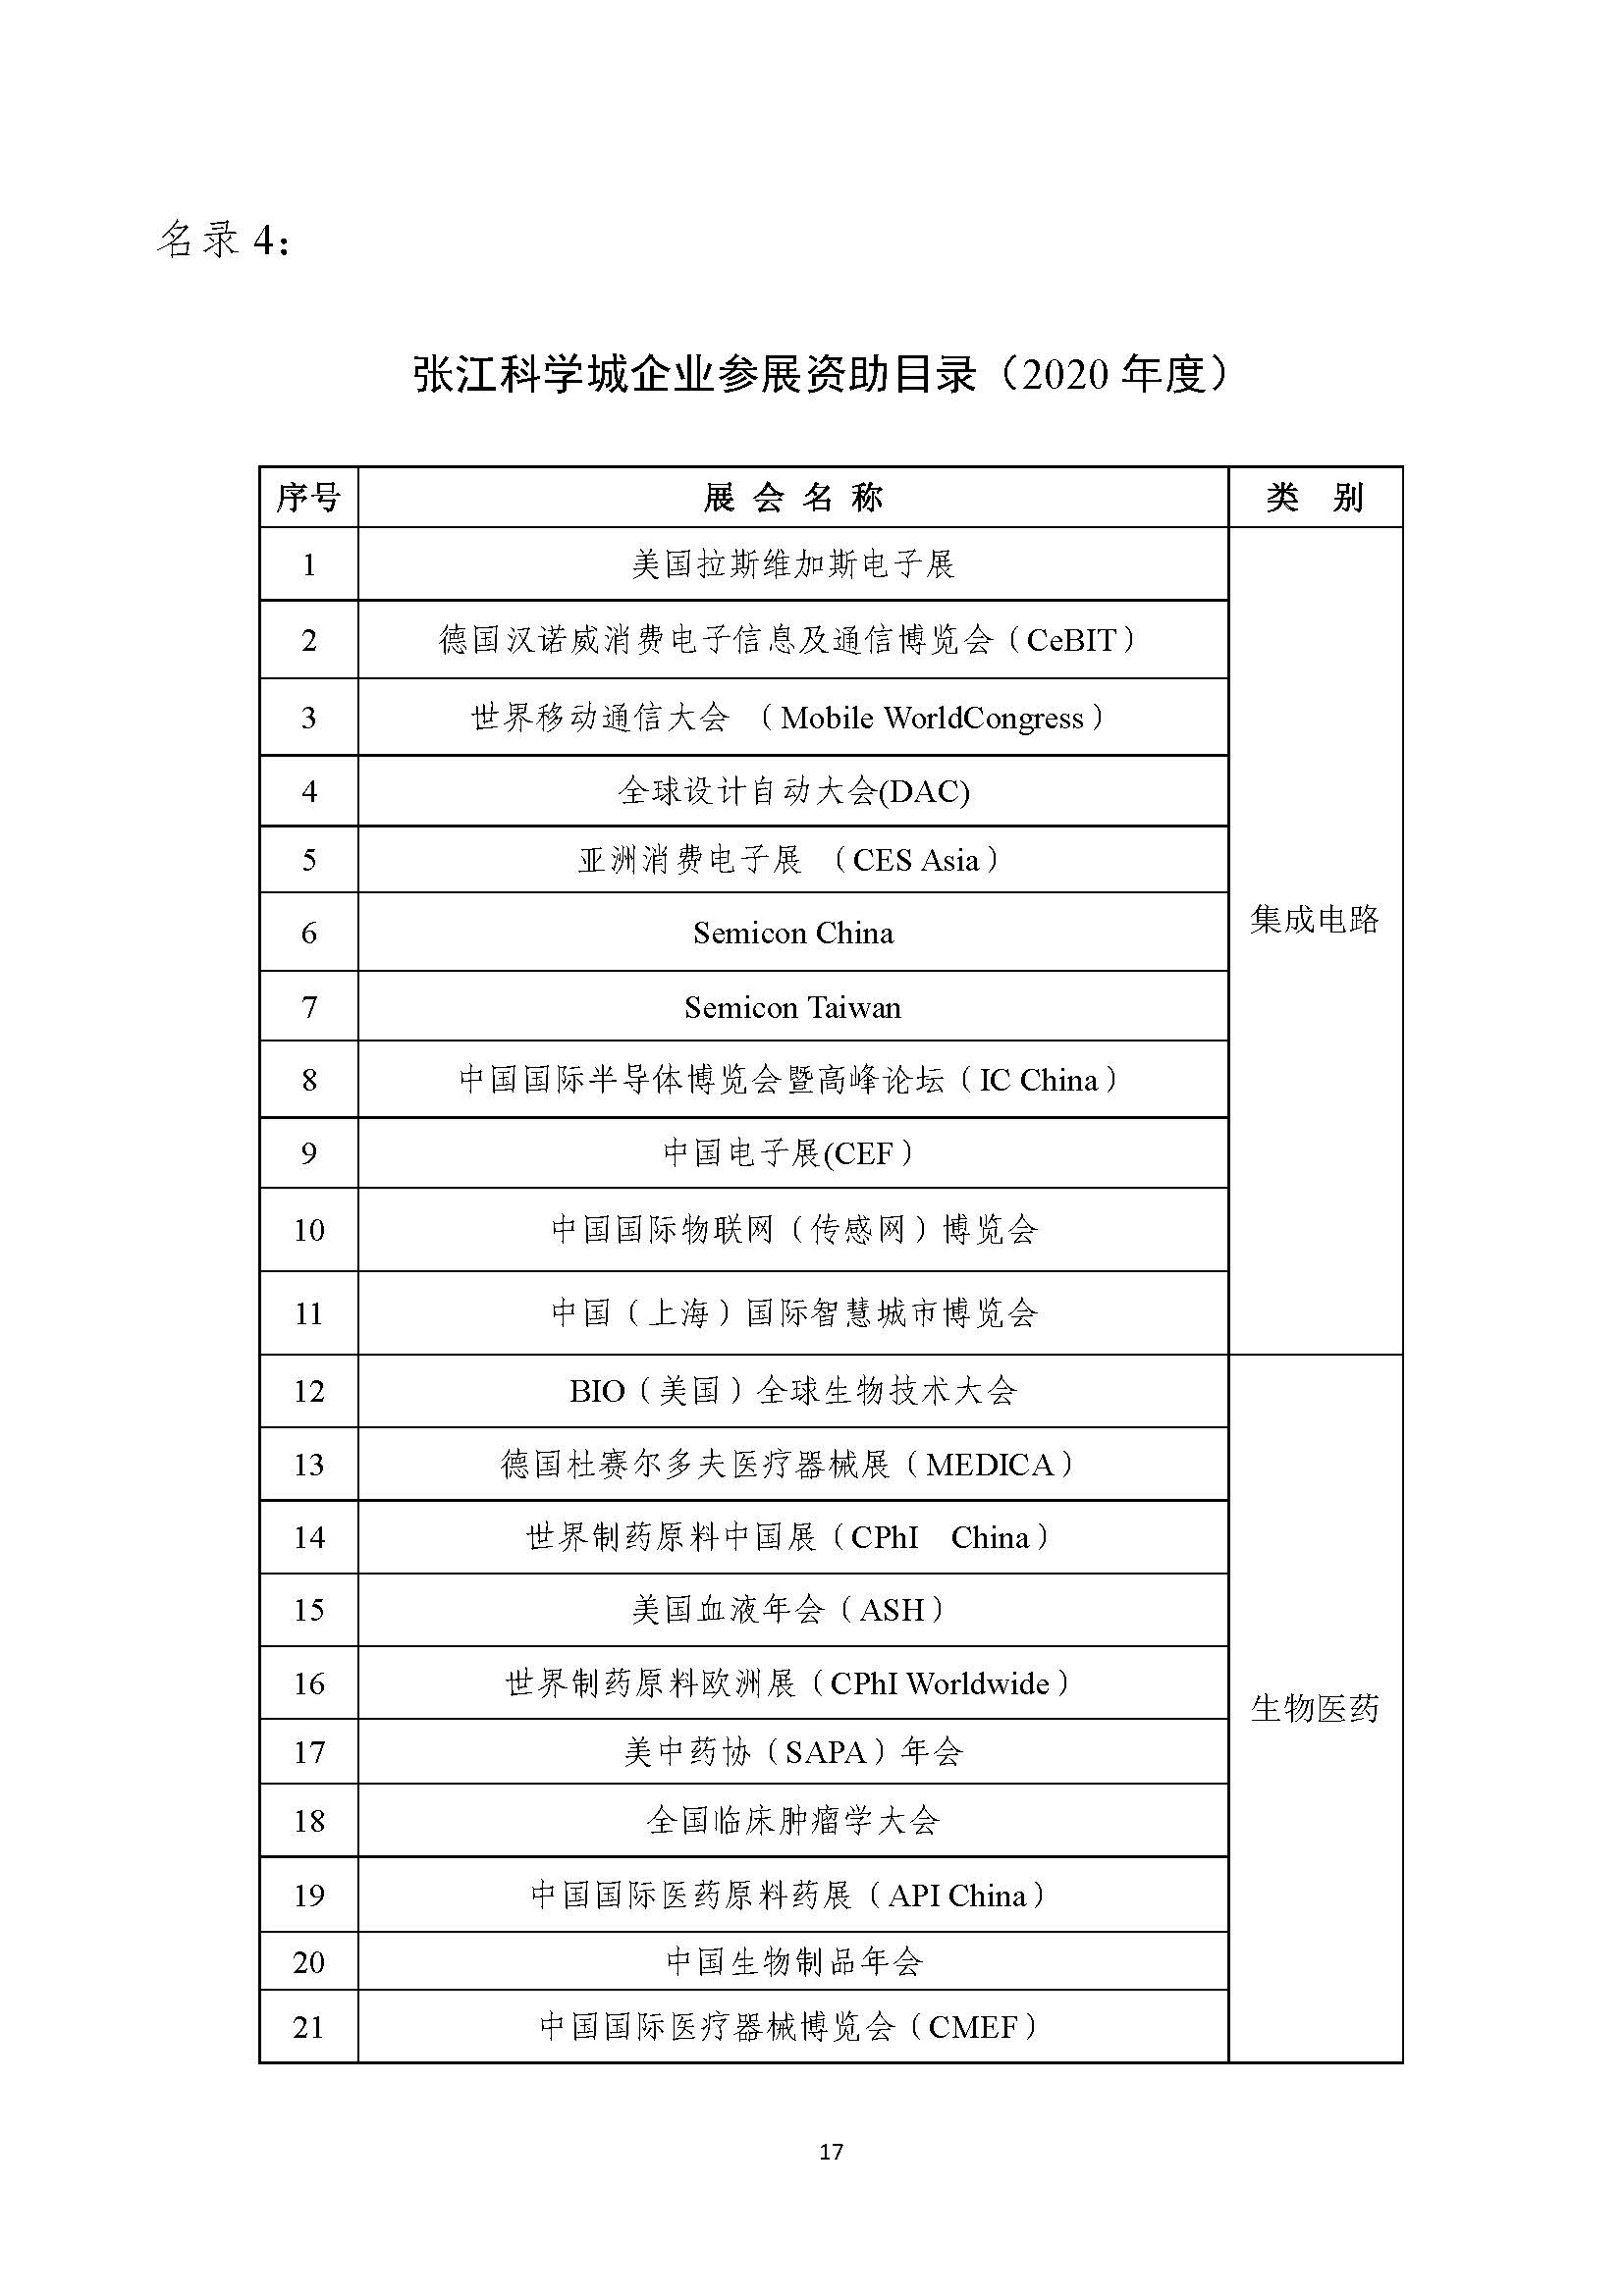 2021年张江科学城专项政策申报指南_页面_17.jpg